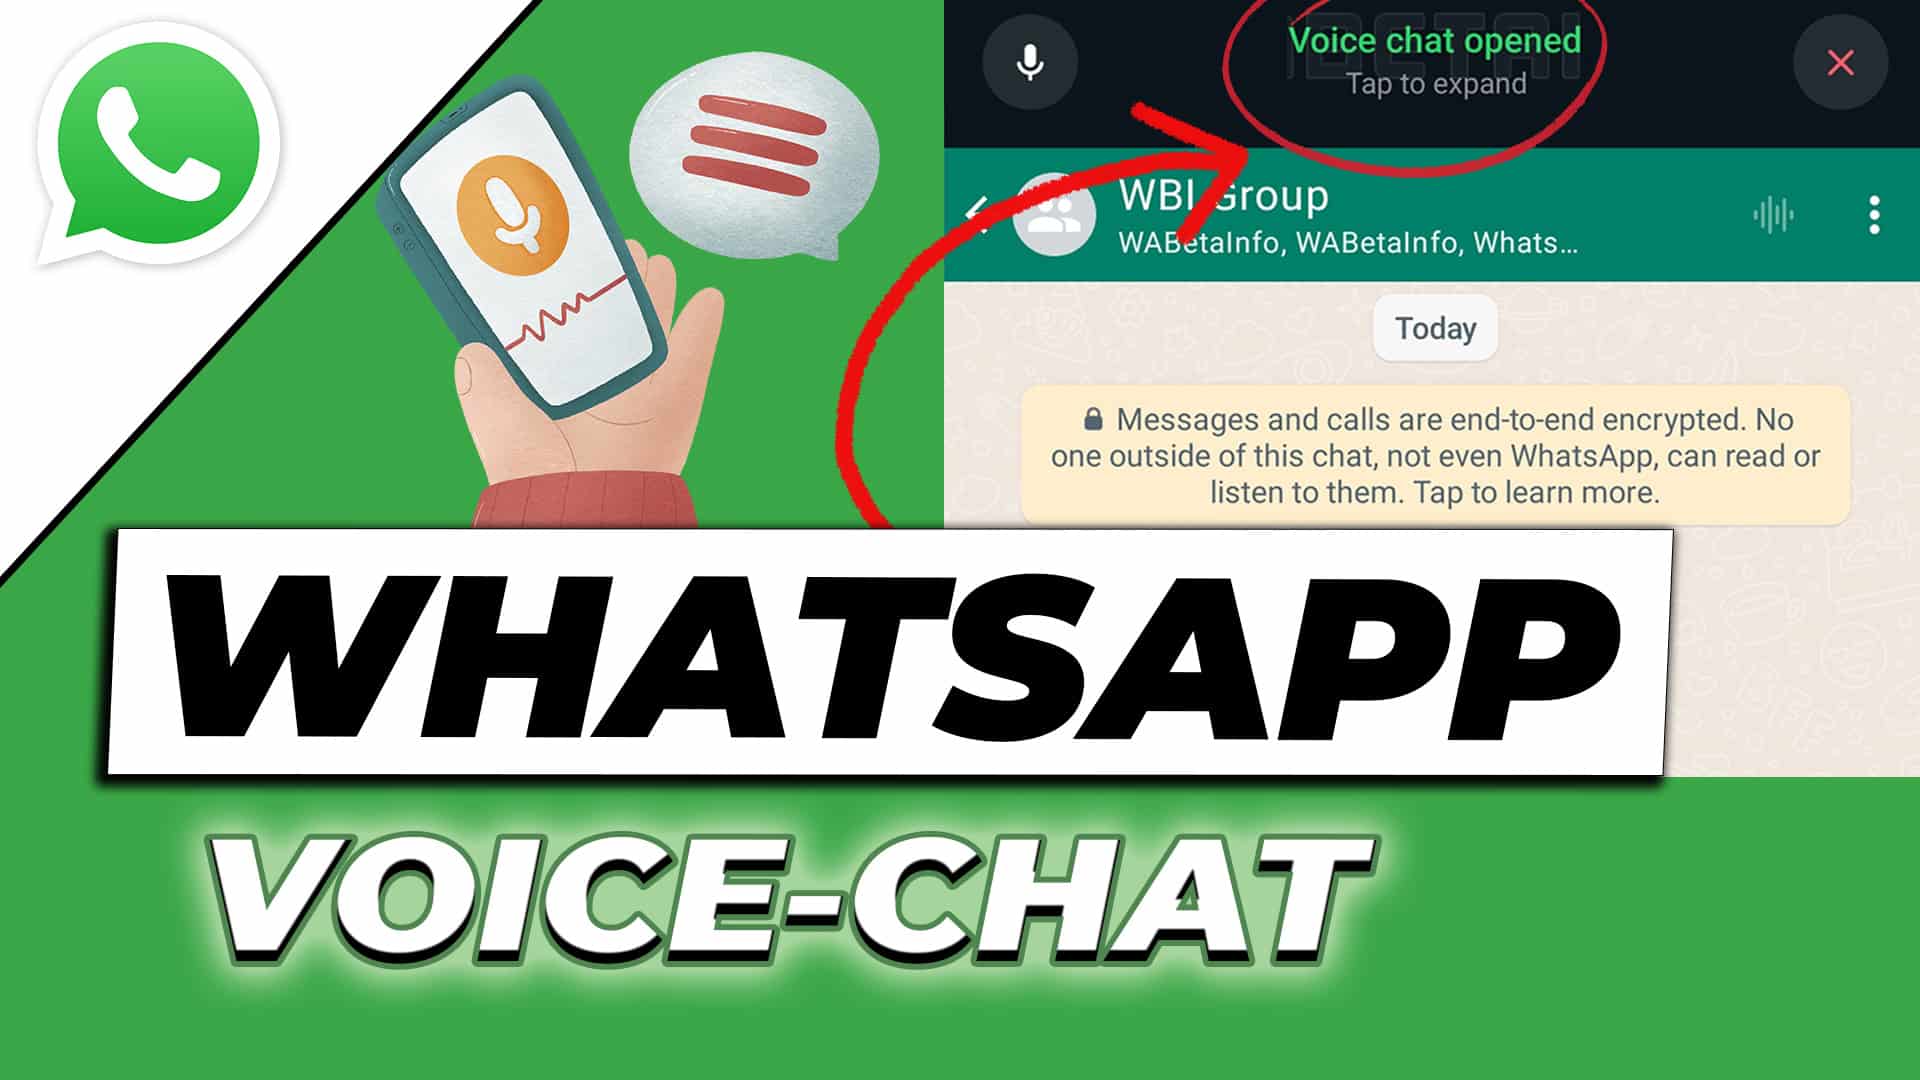 WhatsApp Voice-Chat in Gruppen – Die neue Funktion